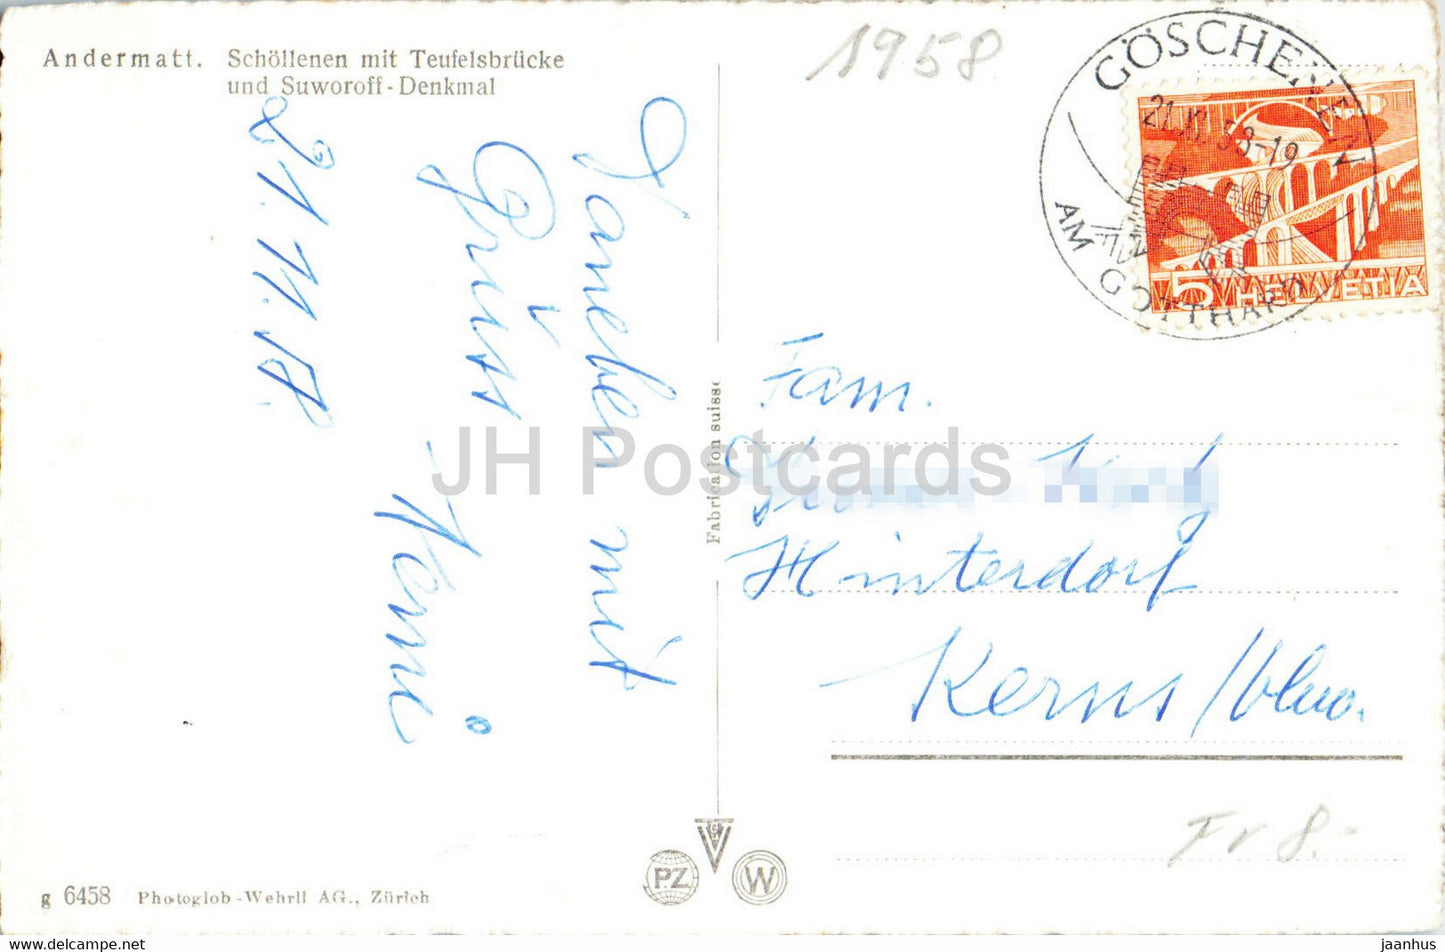 Andermatt - Schollenen mit Teufelsbrücke und Suworoff Denkmal - Multiview - 1958 - alte Postkarte - Schweiz - gebraucht